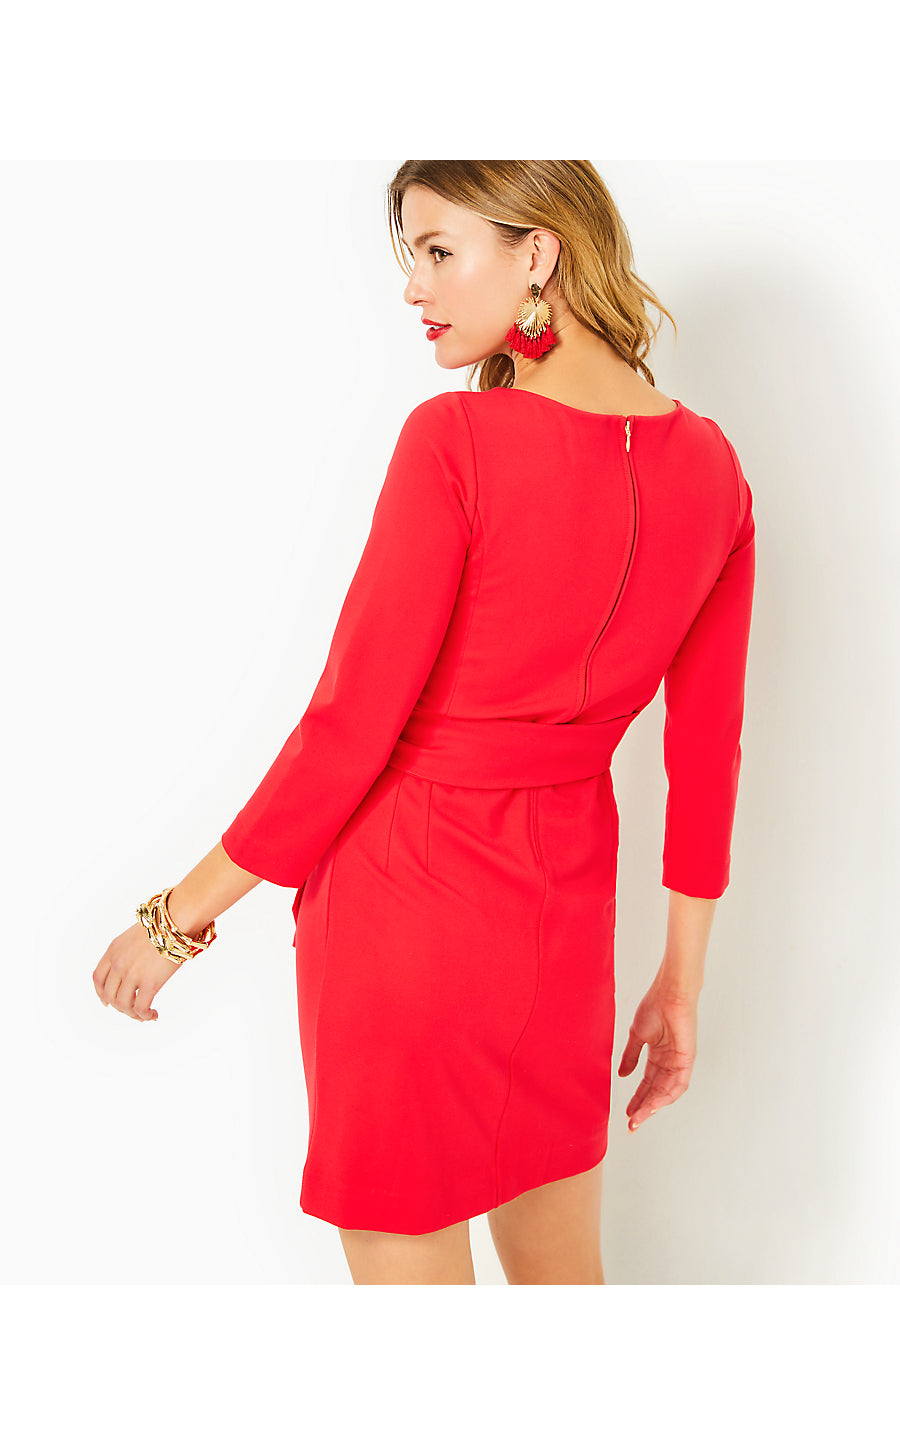 LEIGHTON DRESS - AMARYLLIS RED